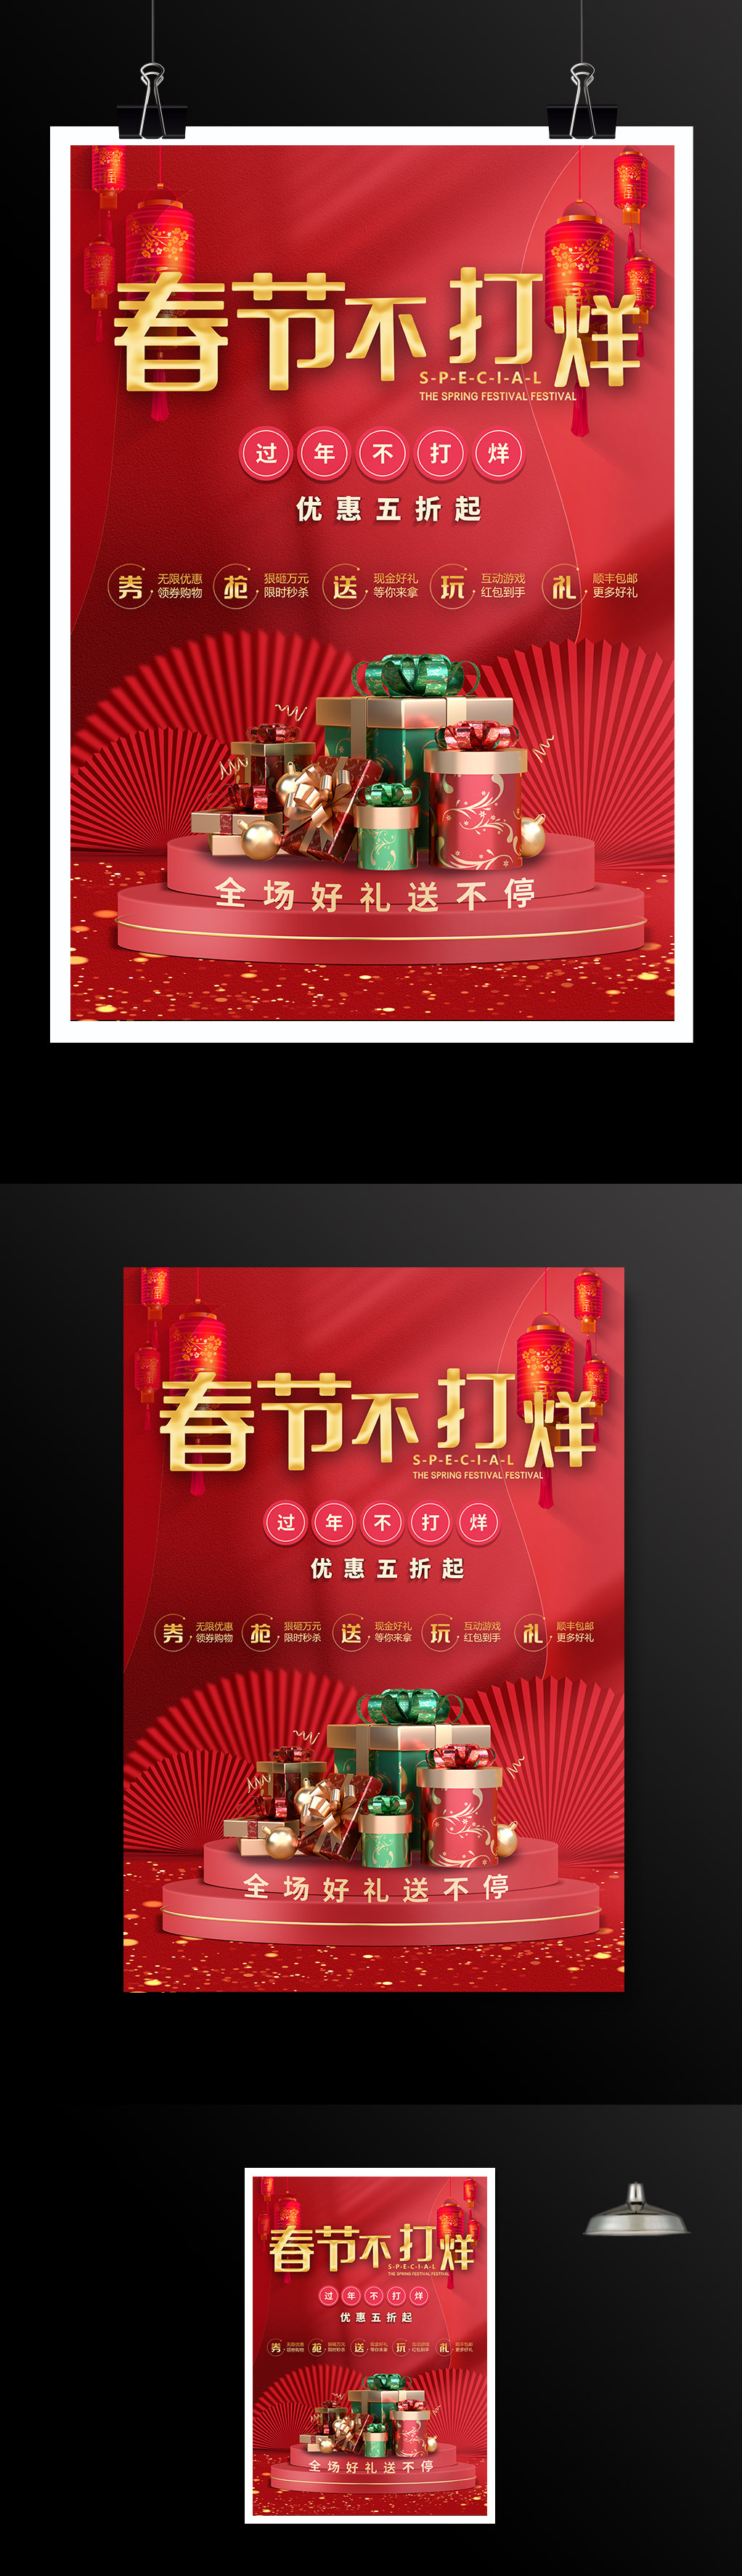  新年春节促销活动海报